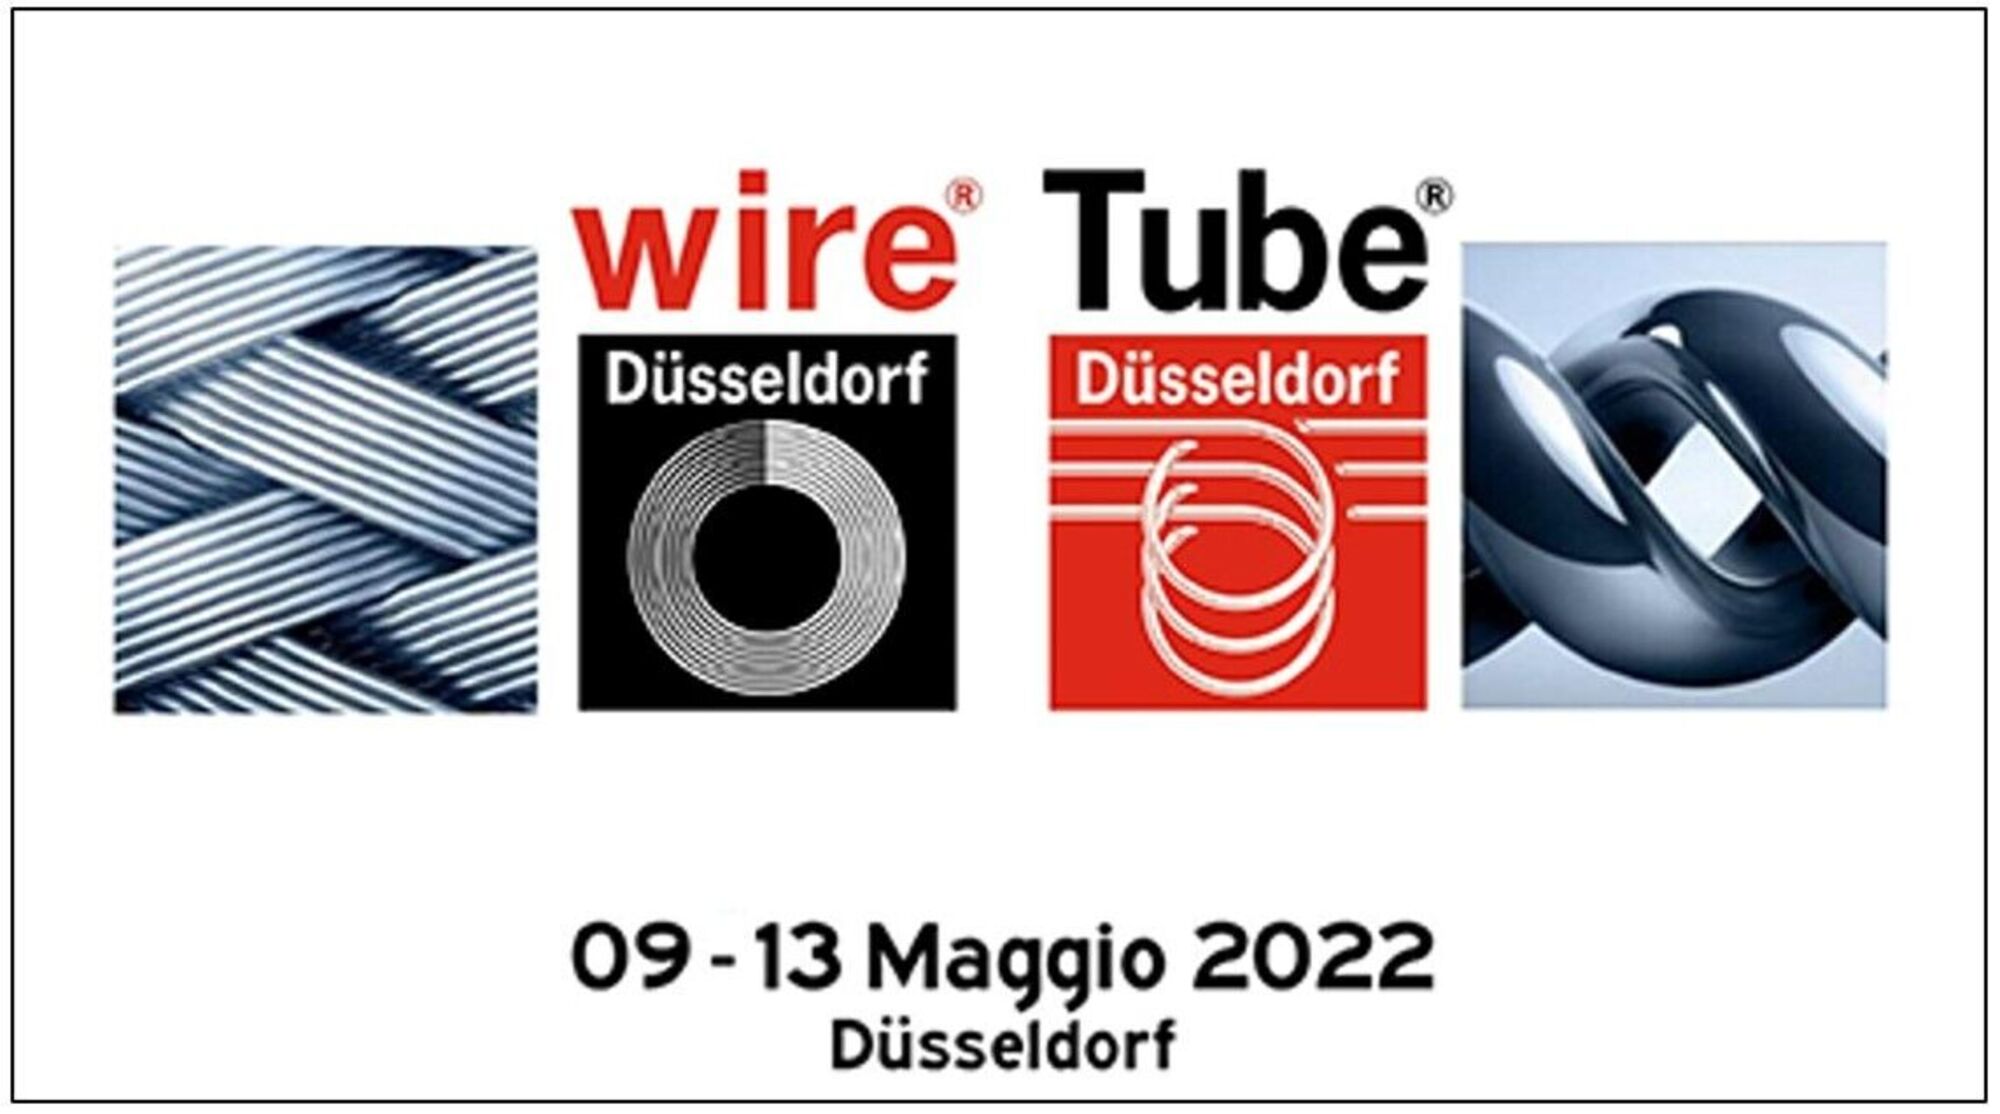 10-11 maggio 2022 - Visita alle fiere Wire e Tube di Düsseldorf 